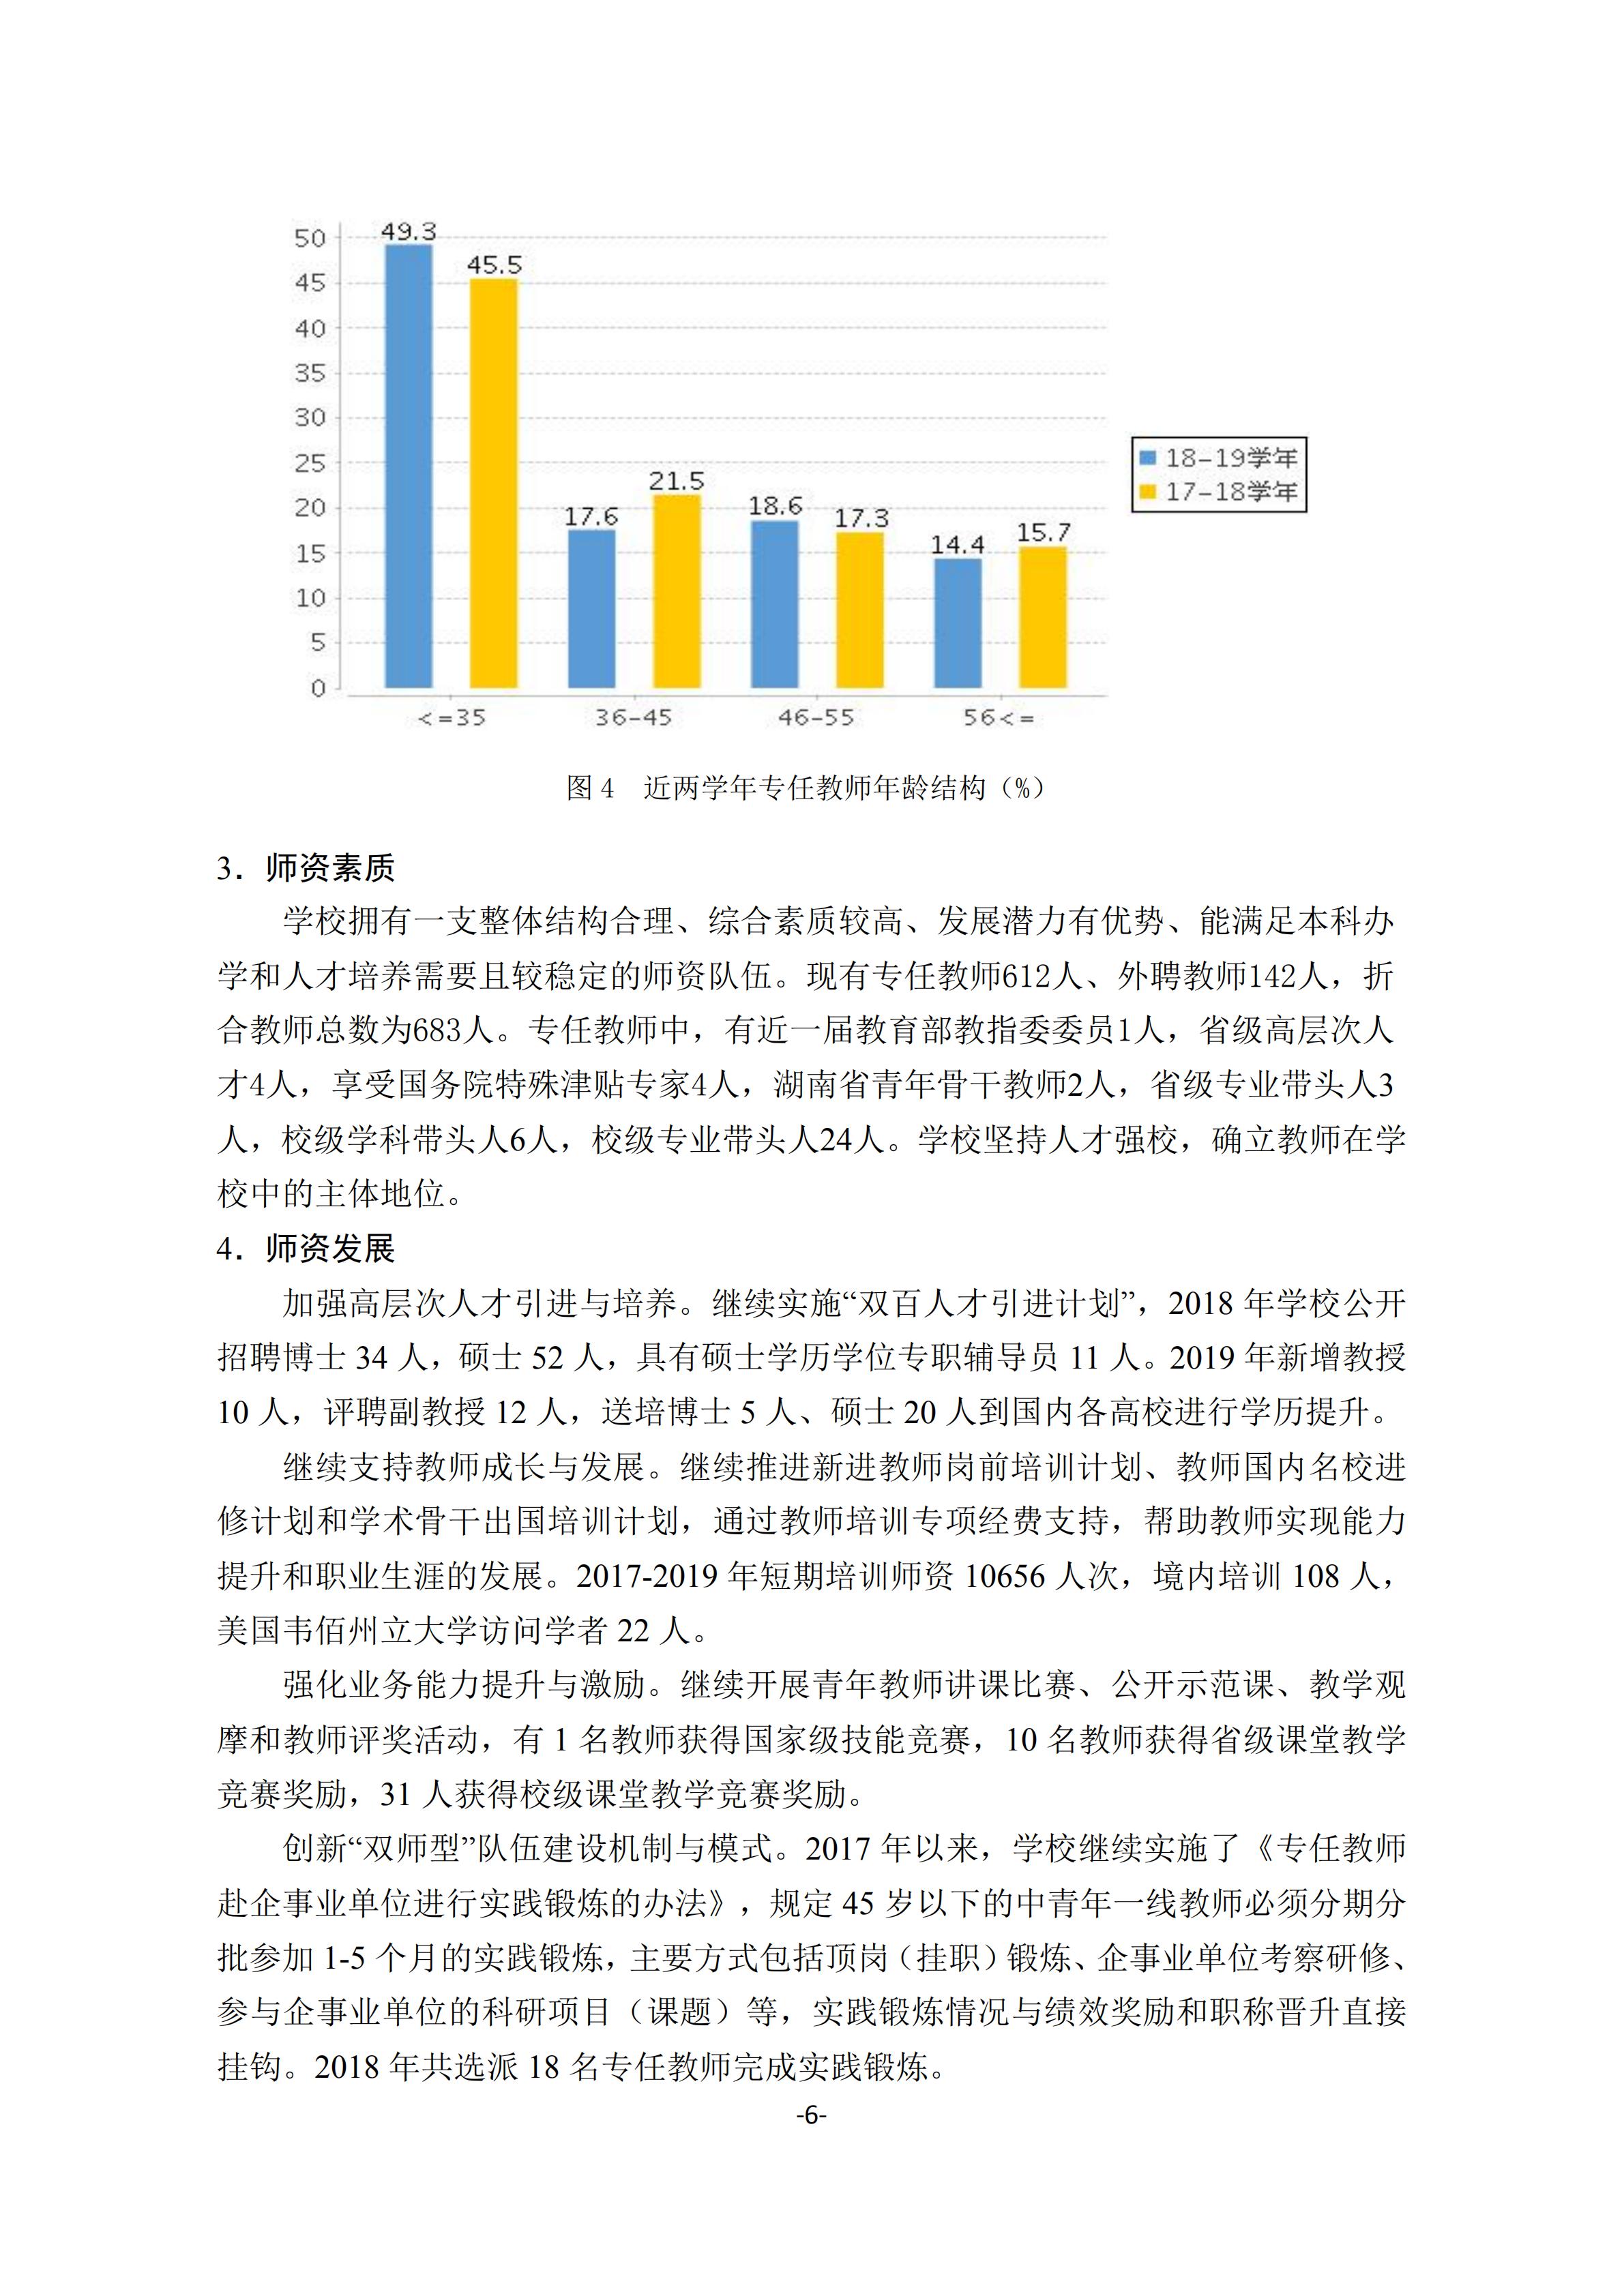 1.湖南交通工程学院2018-2019学年本科教学质量报告_05.jpg